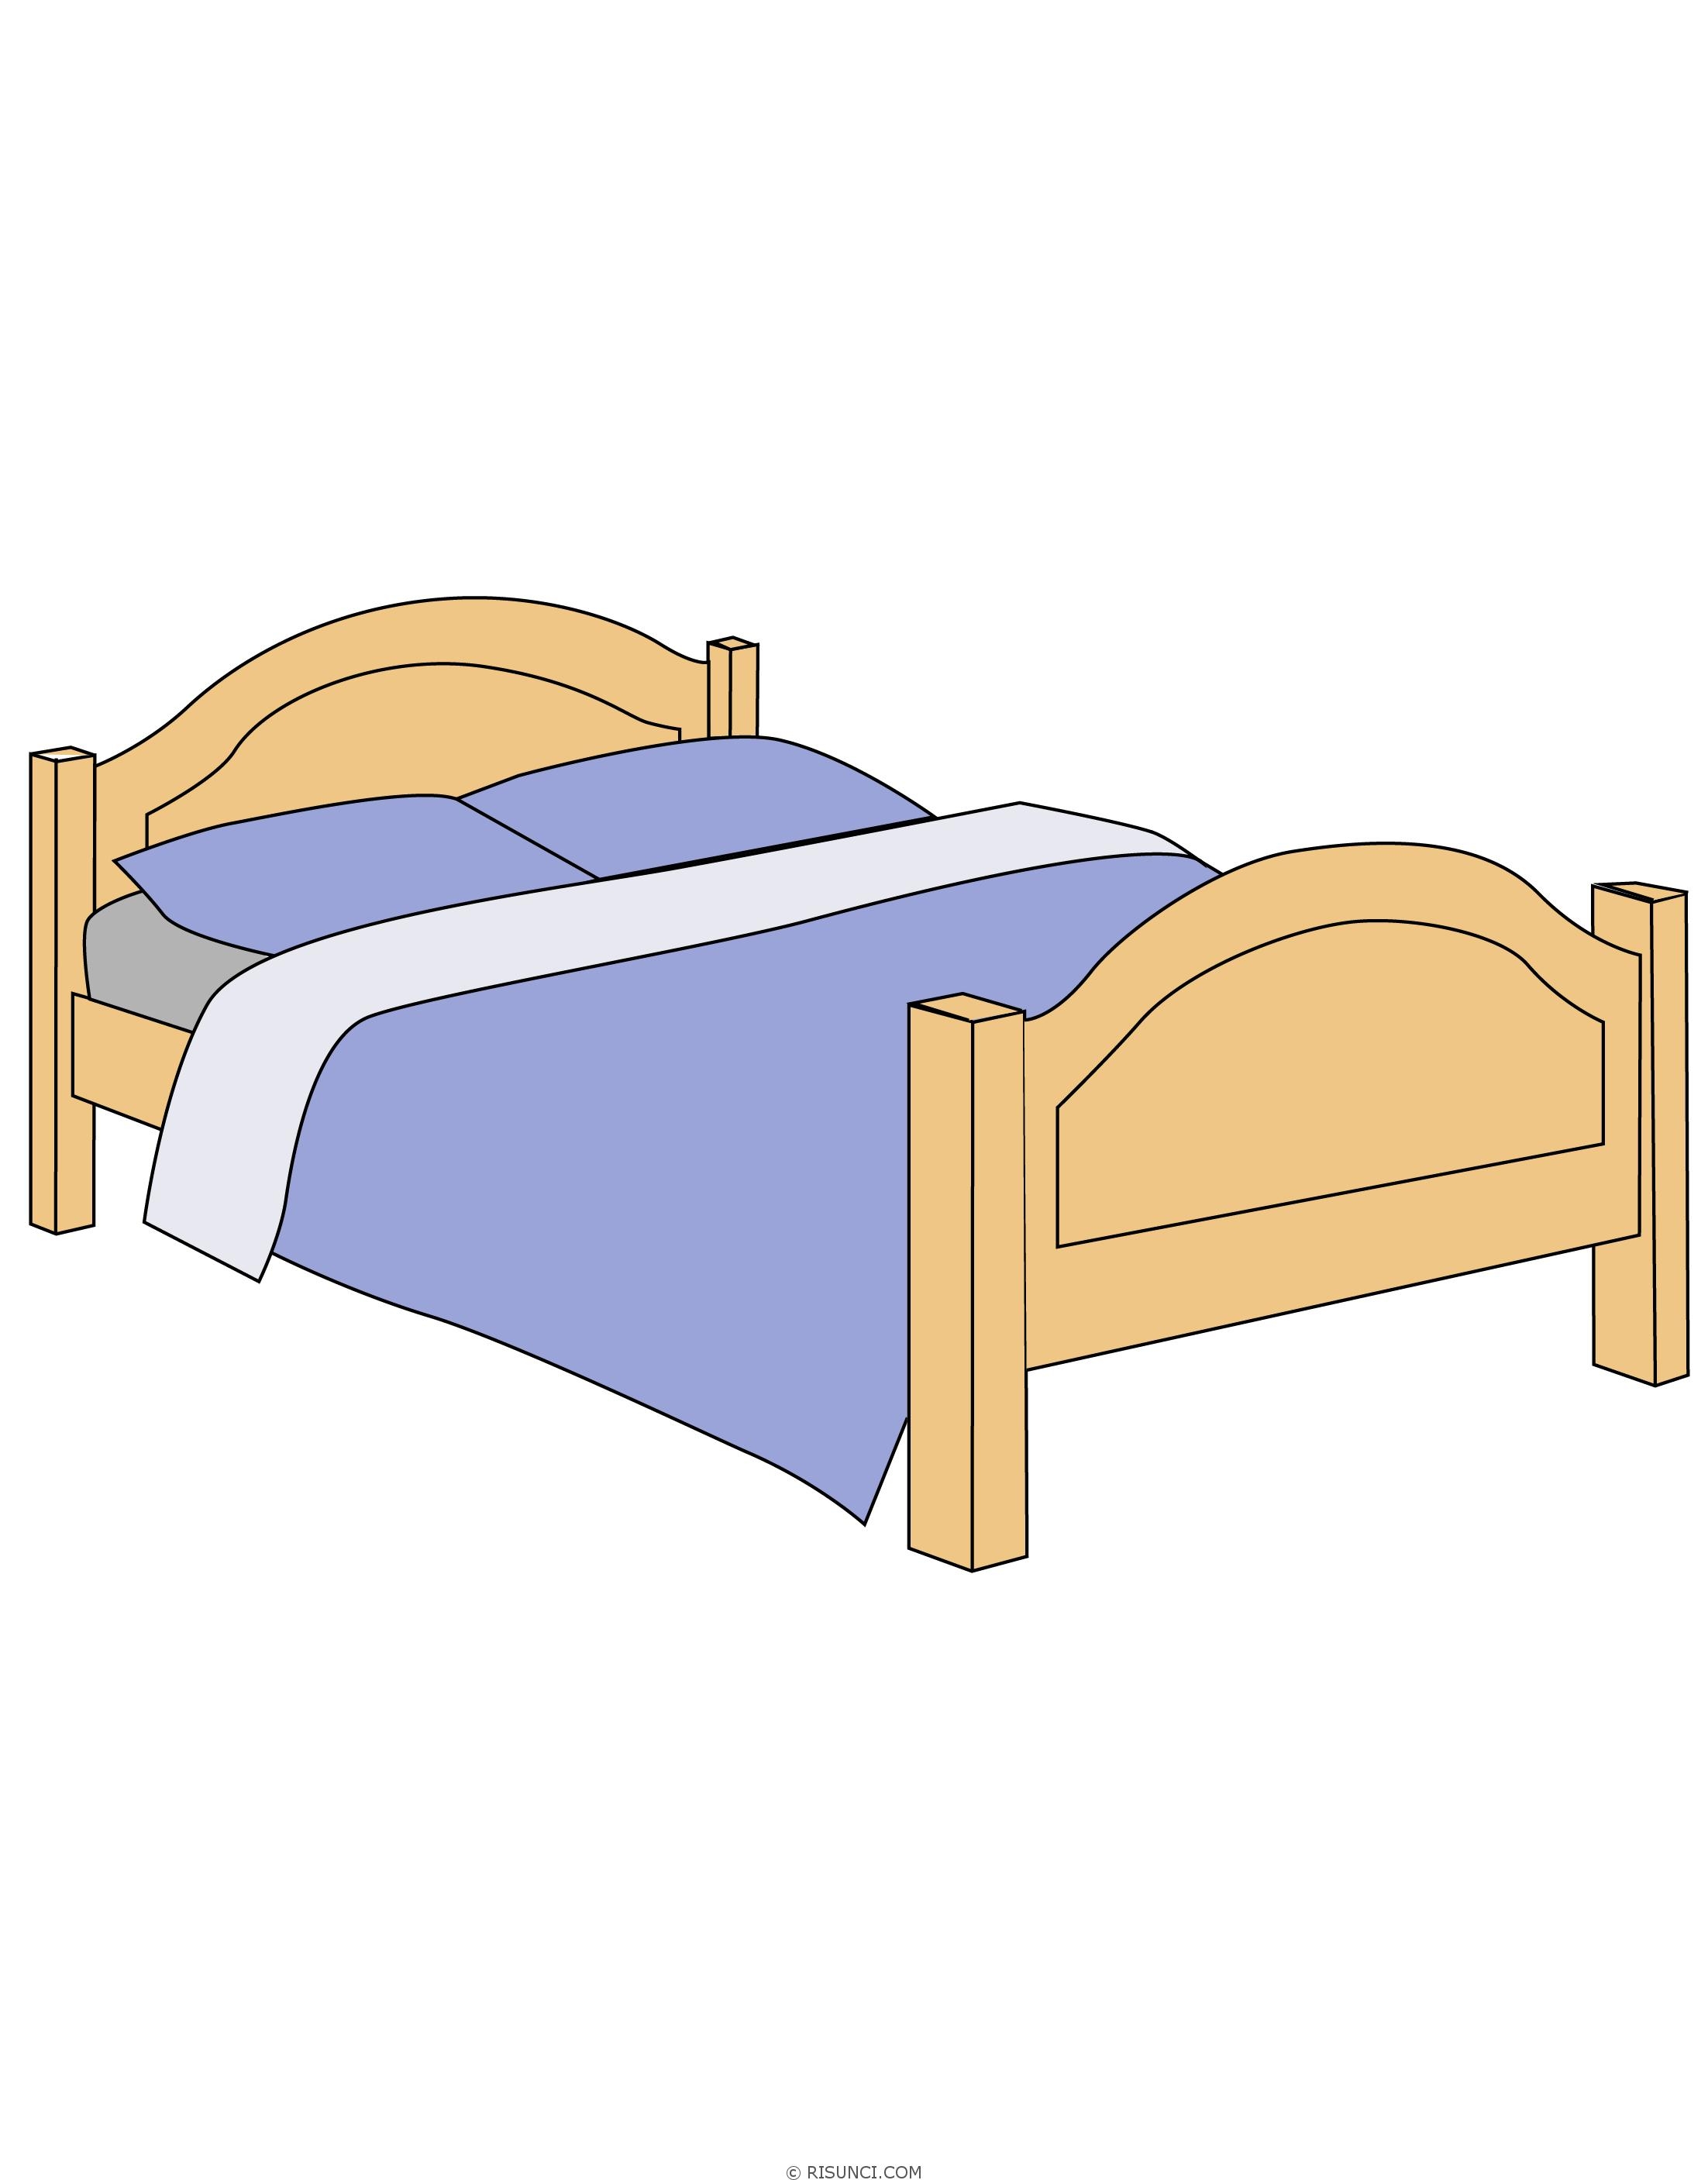 Как декорировать кровать: 30 модных вариантов постельного белья